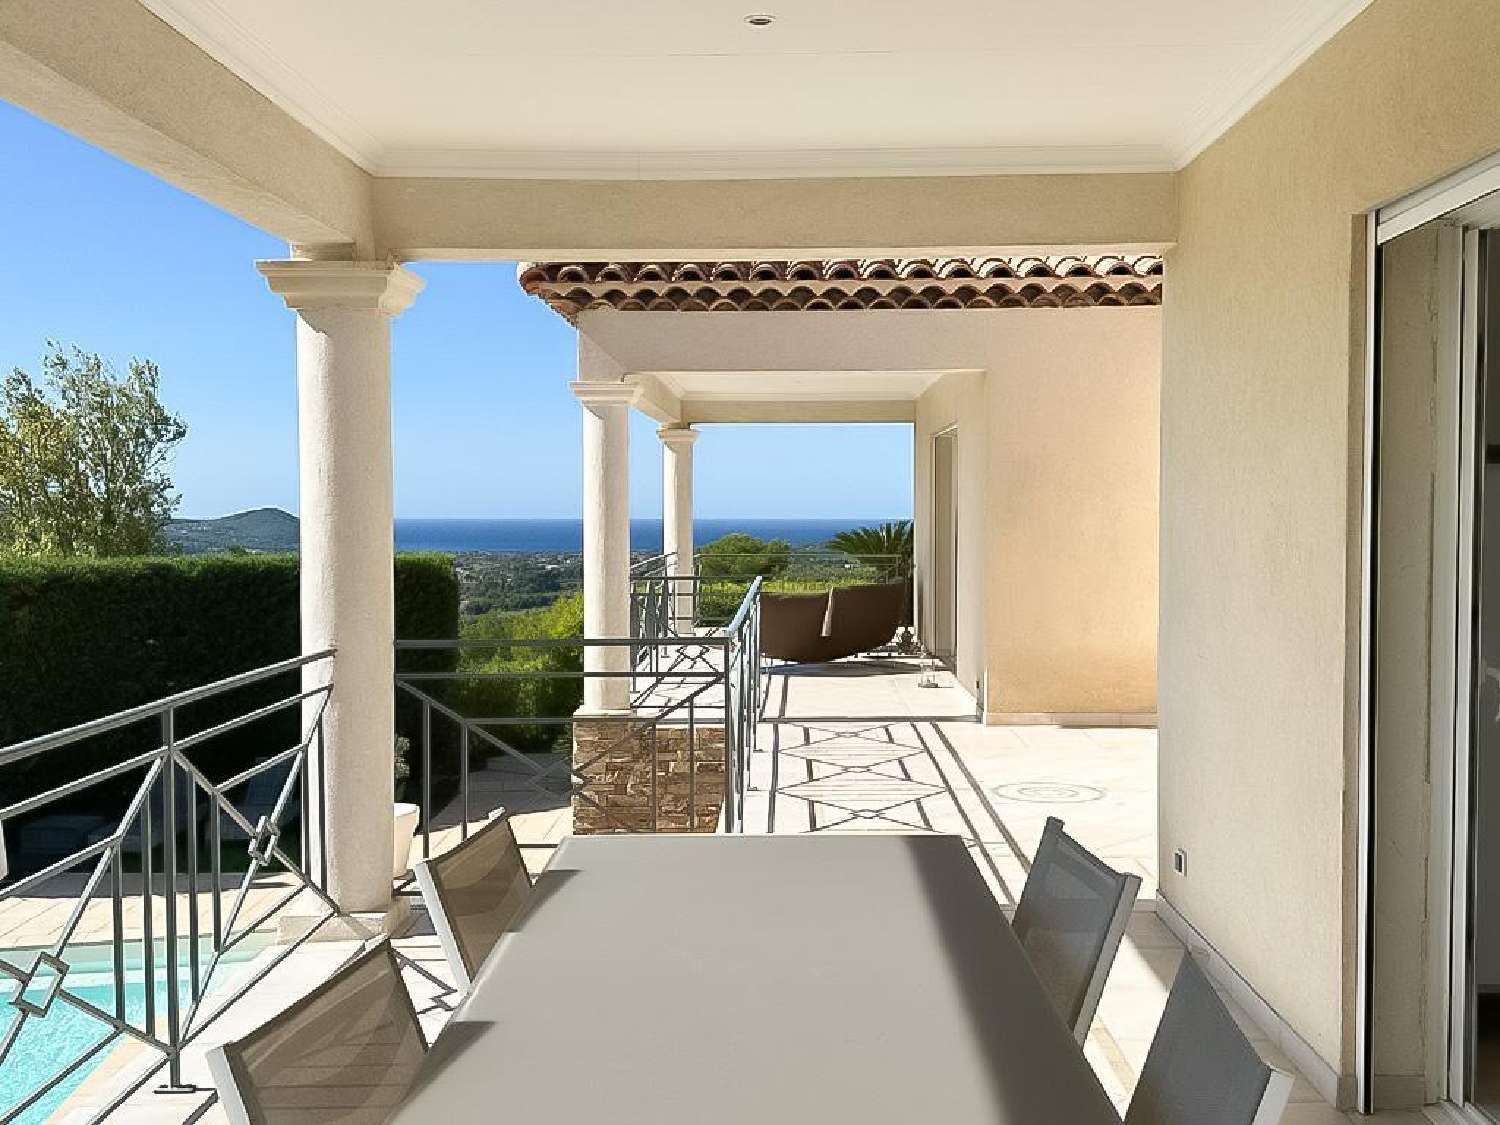  à vendre villa La Cadière-d'Azur Var 4